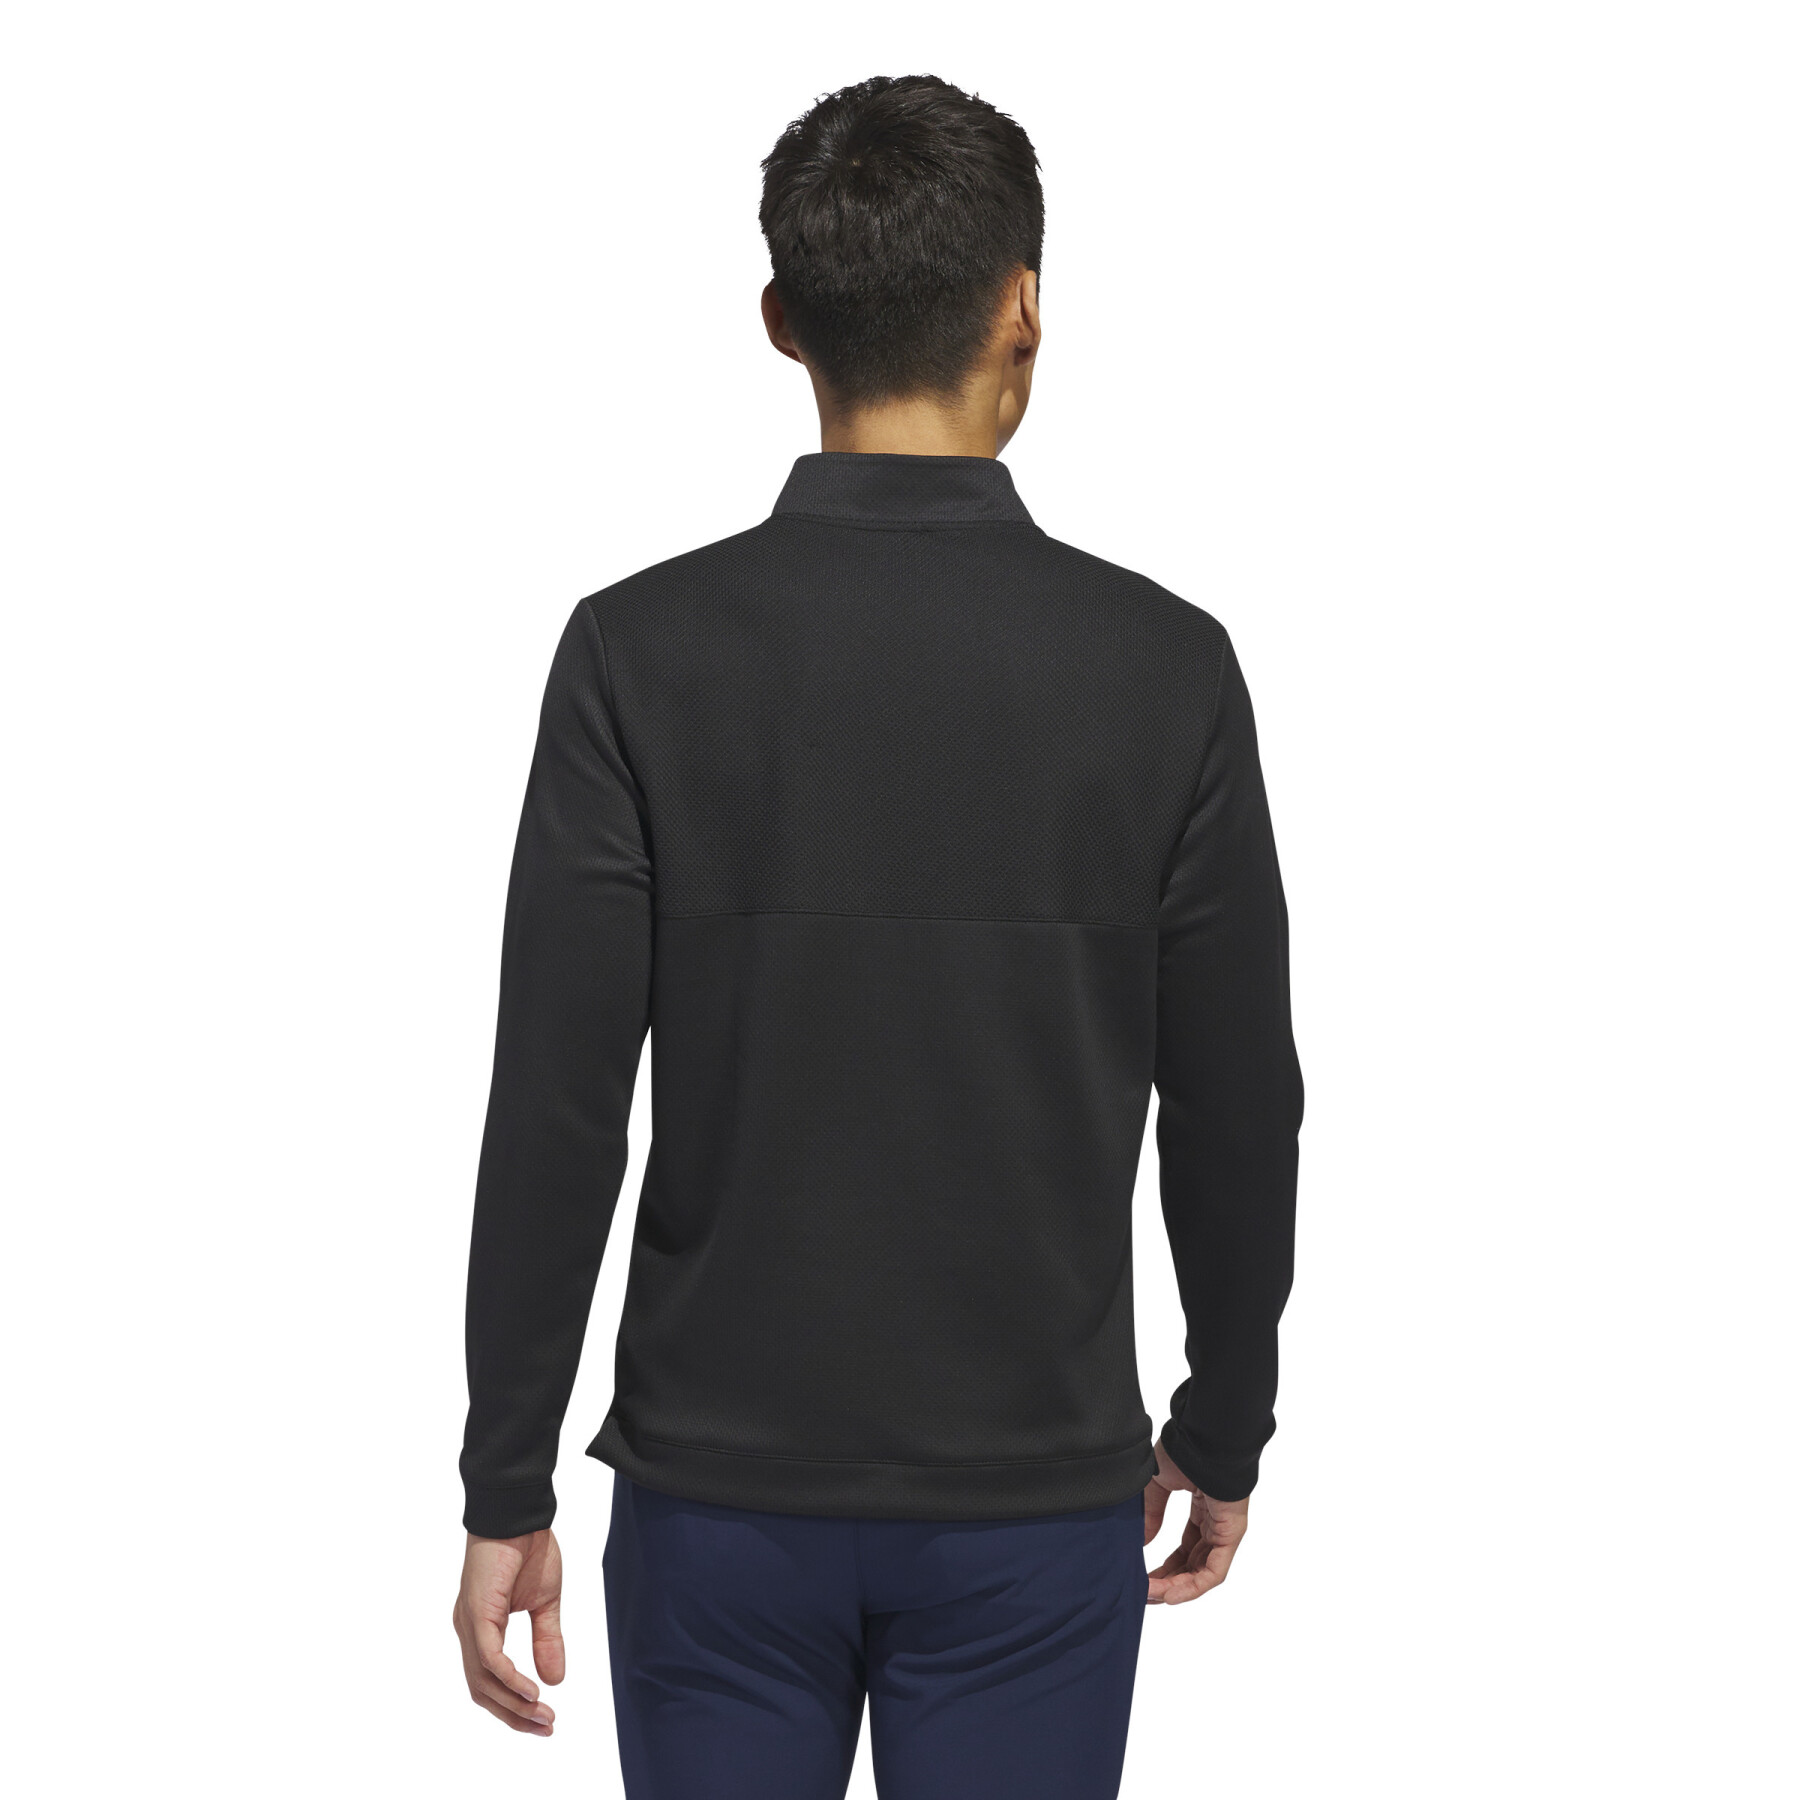 Sweatshirt texturé 1/4 zip adidas Ultimate365